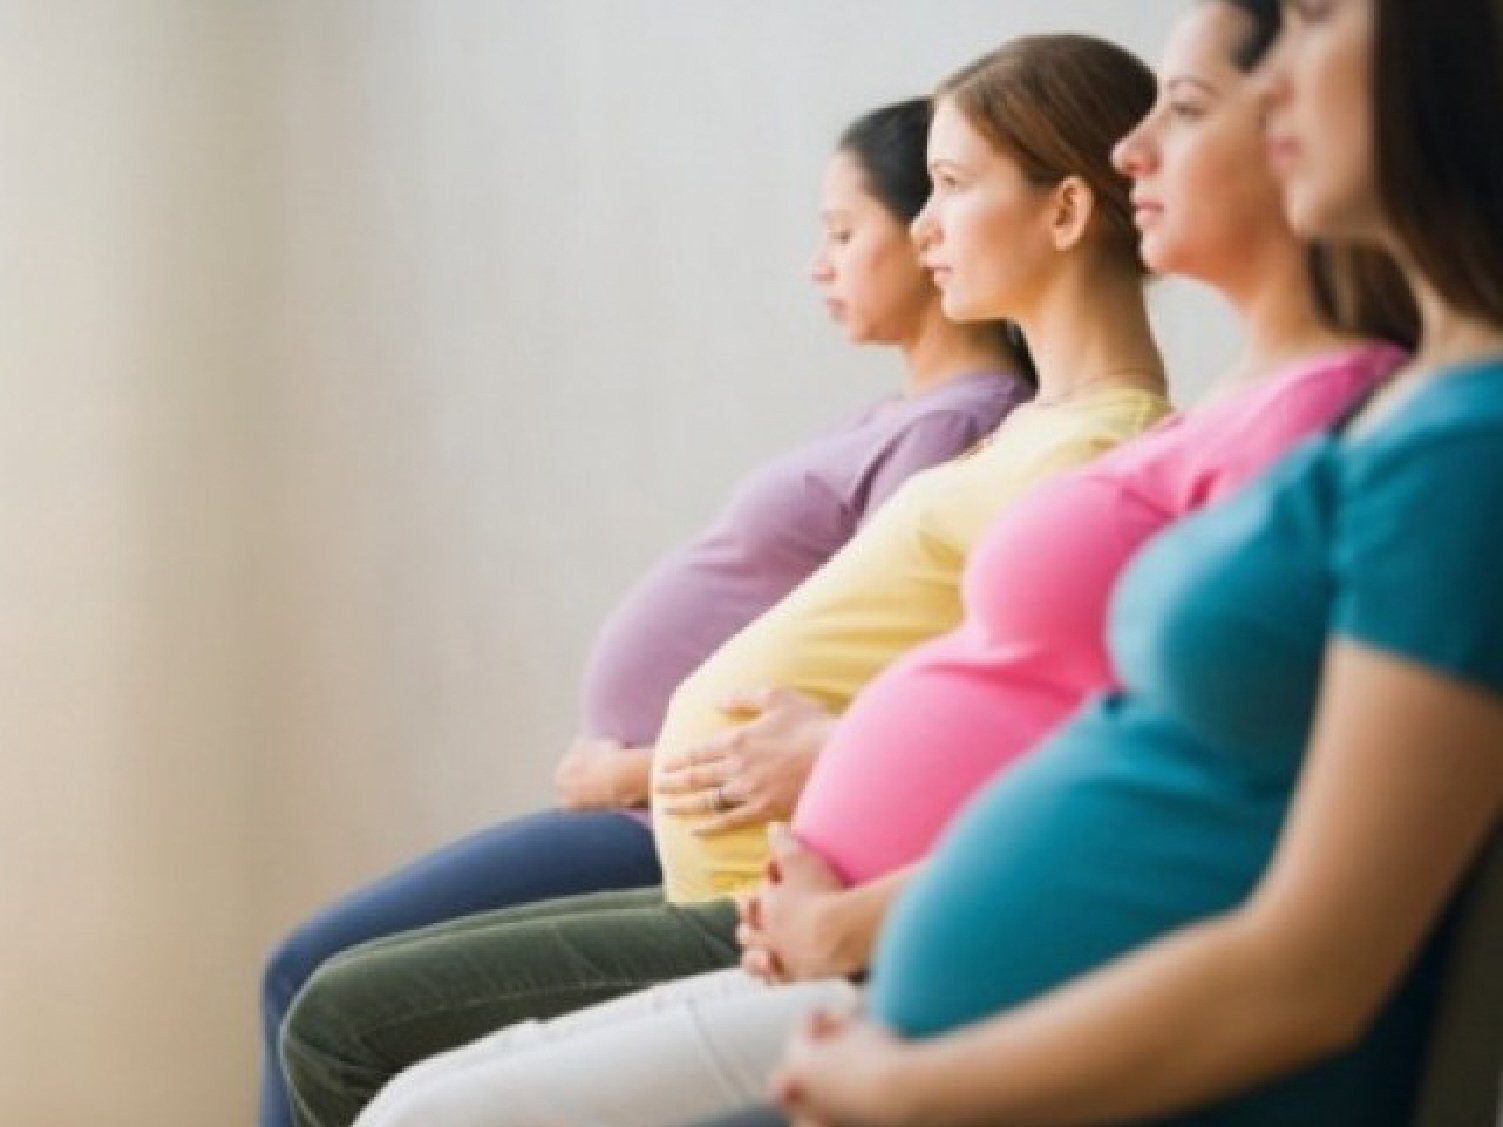 الفوائد والاحتياطات المتعلقة بالتدليك خلال فترة الحمل